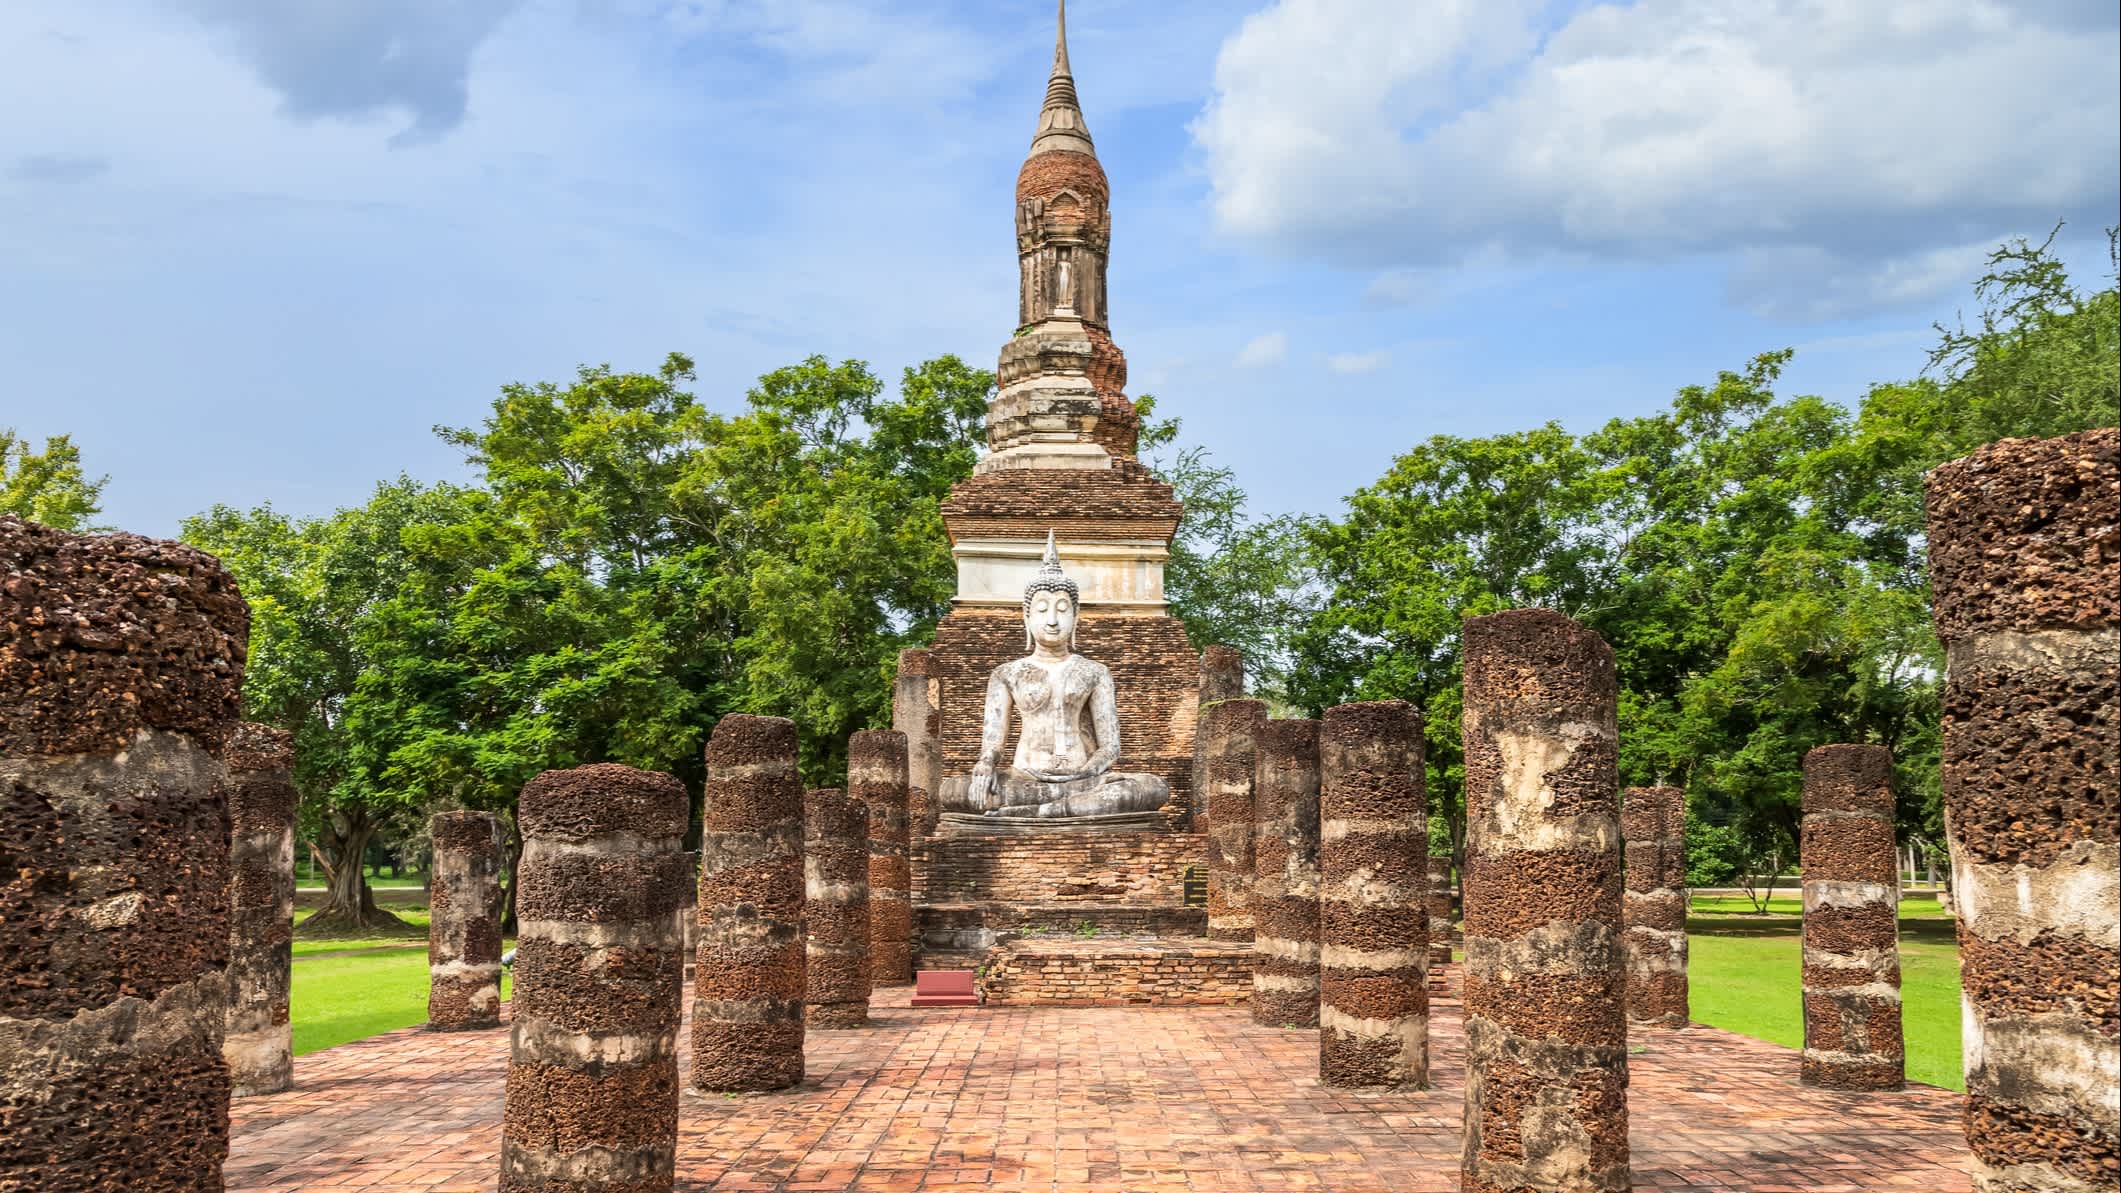 Vieux temple avec trois pointes de pagode dans le parc historique de Sukhothai, Thaïlande, patrimoine mondial de l'UNESCO.